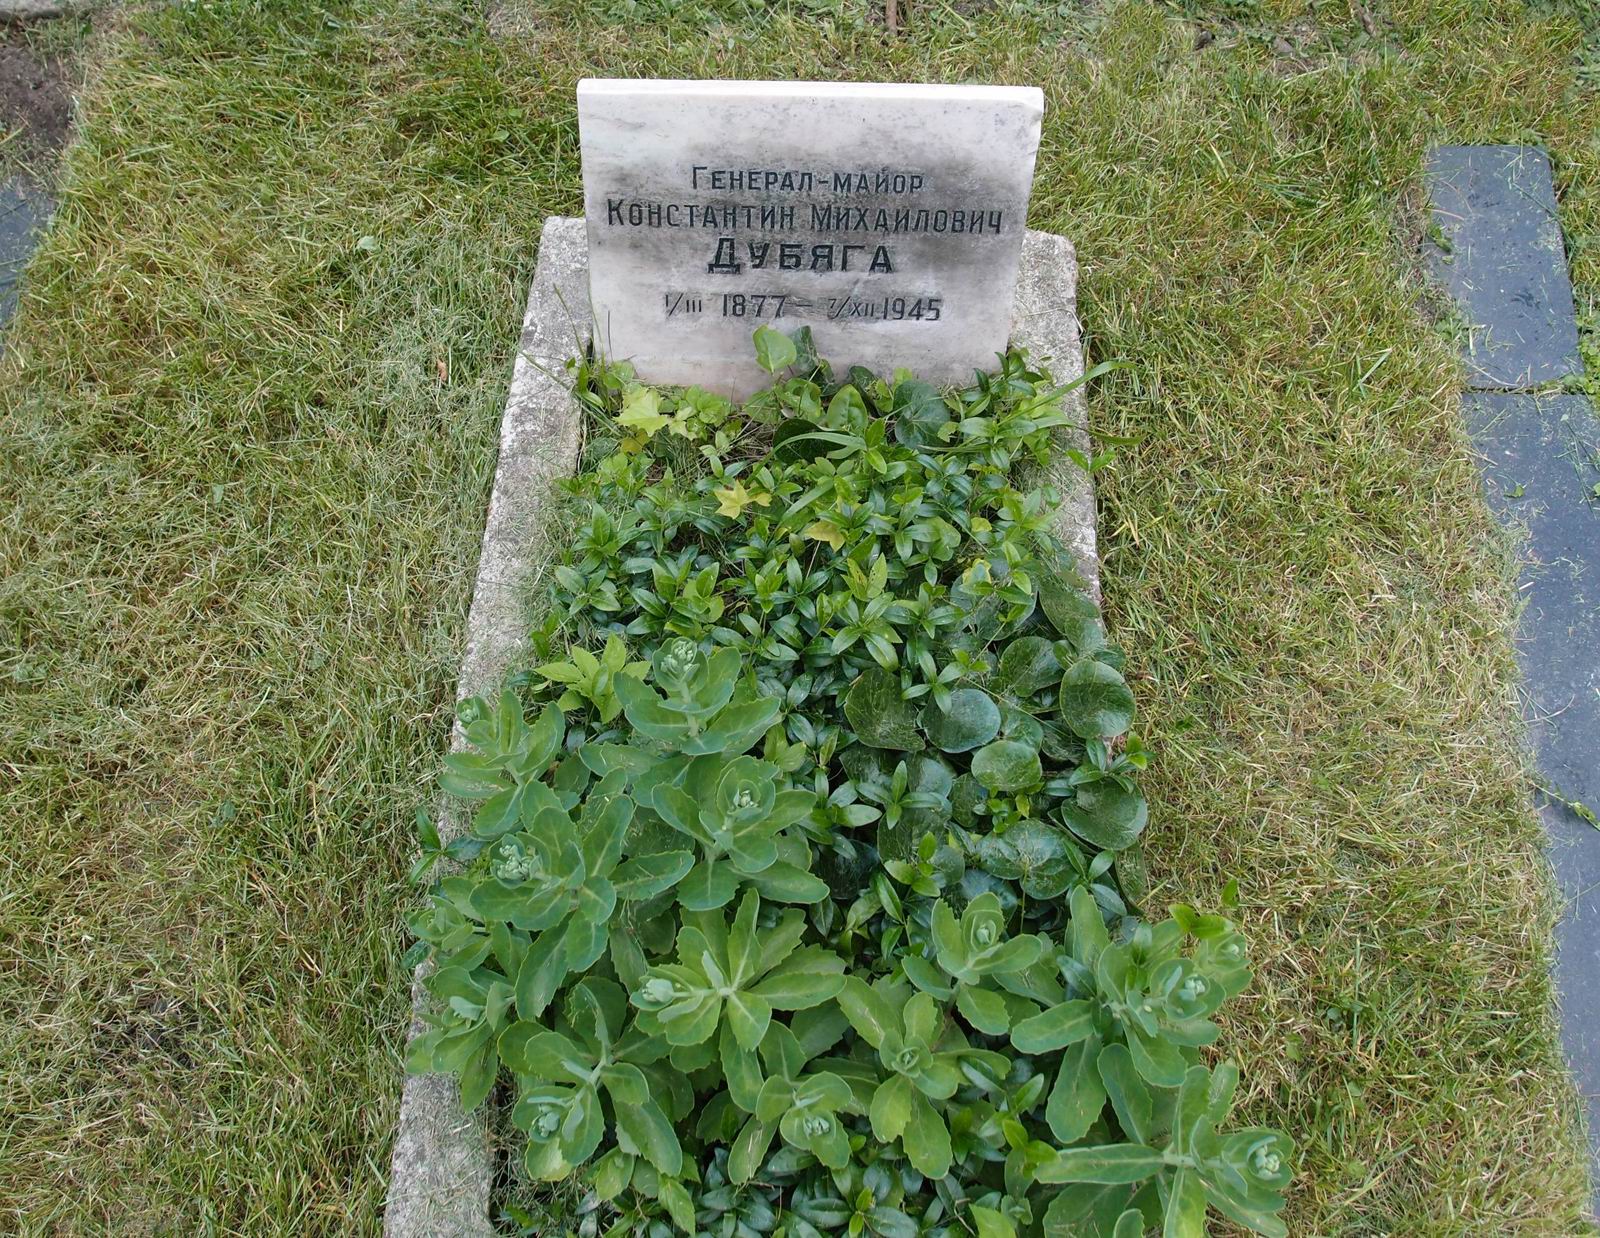 Памятник на могиле Дубяги К.М. (1877-1945), на Новодевичьем кладбище (4-13-12).